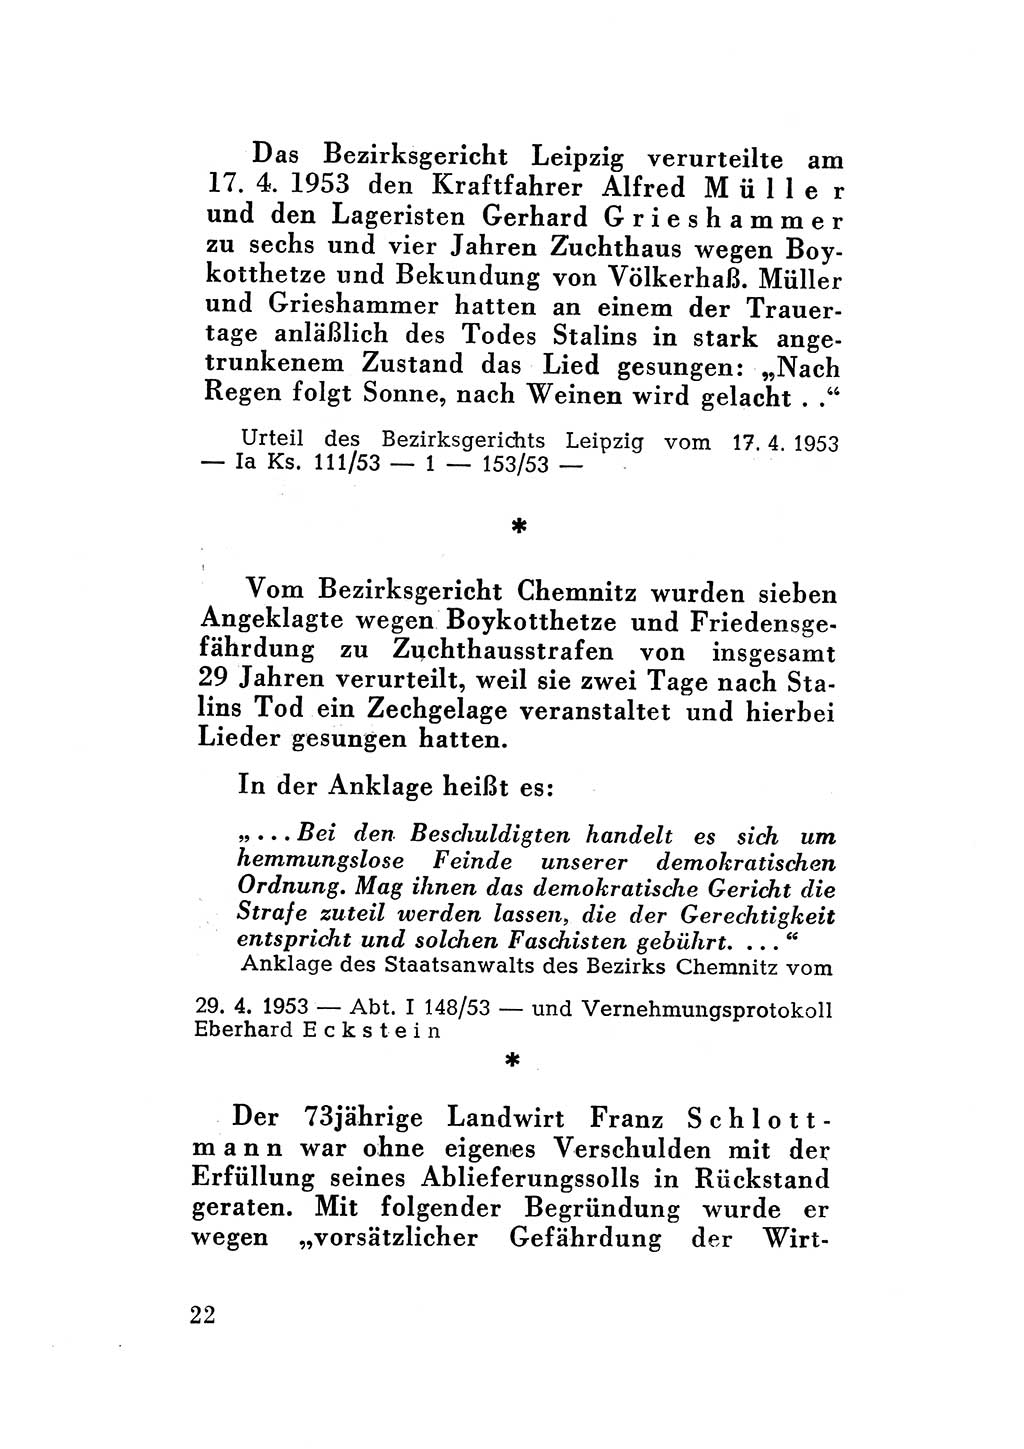 Katalog des Unrechts, Untersuchungsausschuß Freiheitlicher Juristen (UfJ) [Bundesrepublik Deutschland (BRD)] 1956, Seite 22 (Kat. UnR. UfJ BRD 1956, S. 22)